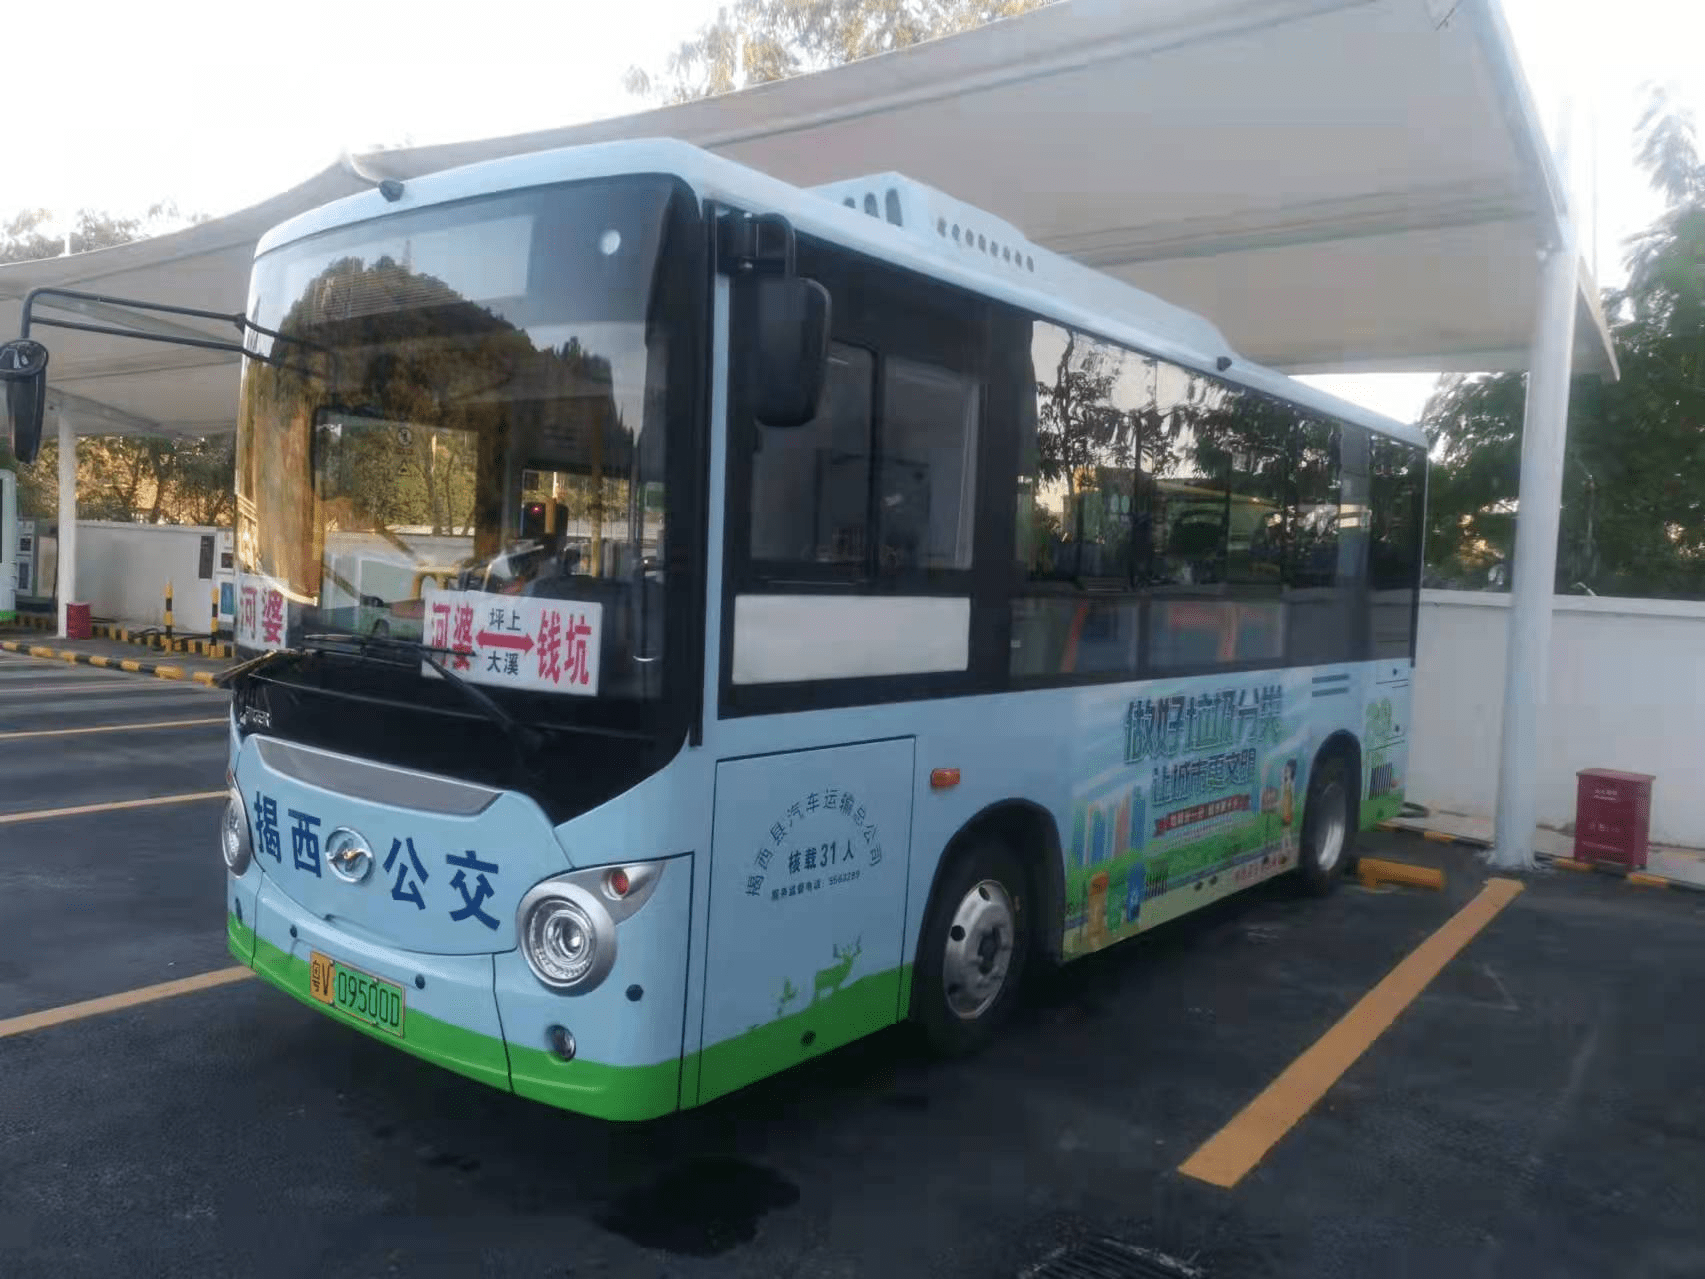 45台苏州金龙微巴助力揭西县绿色城乡公交一体化